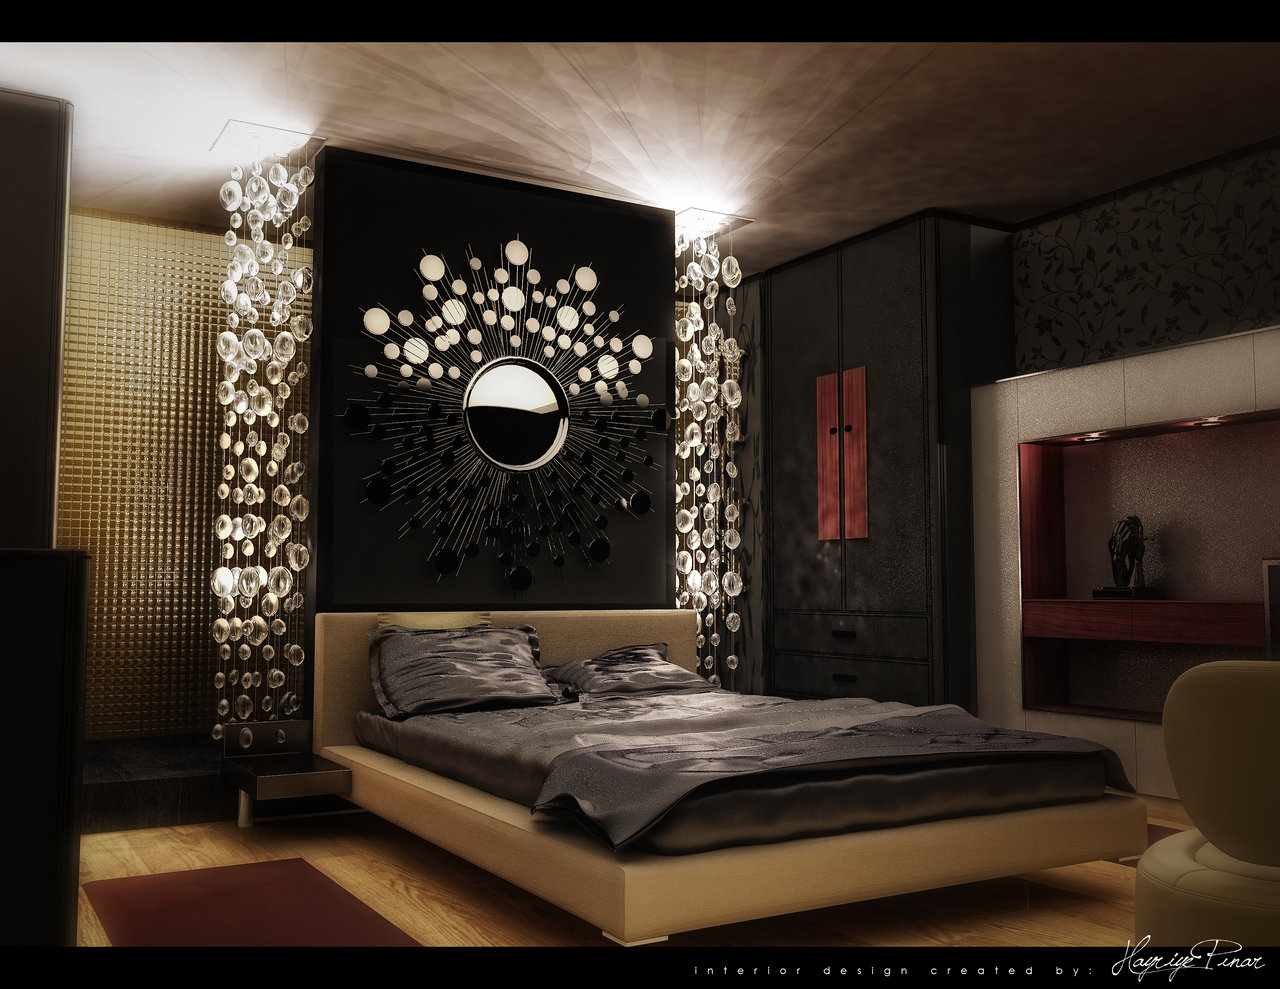 Ikea Bedroom ideas - ikea Bedroom 2014 ideas ~ Room Design 